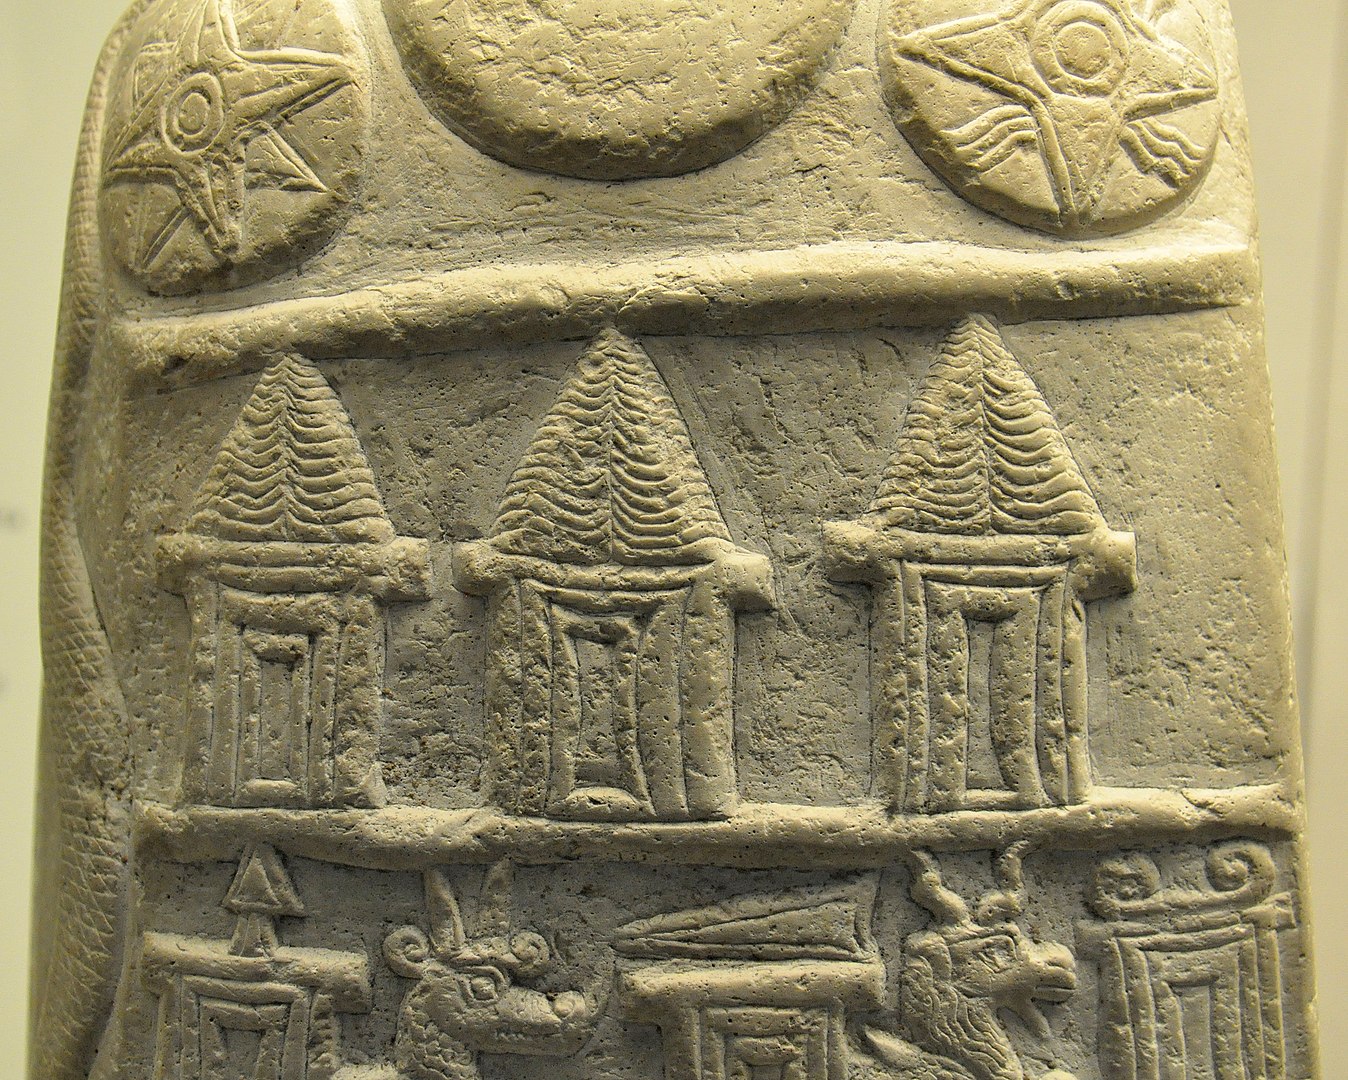 Representação de Anu, deus dos sumérios em sítio arqueológico